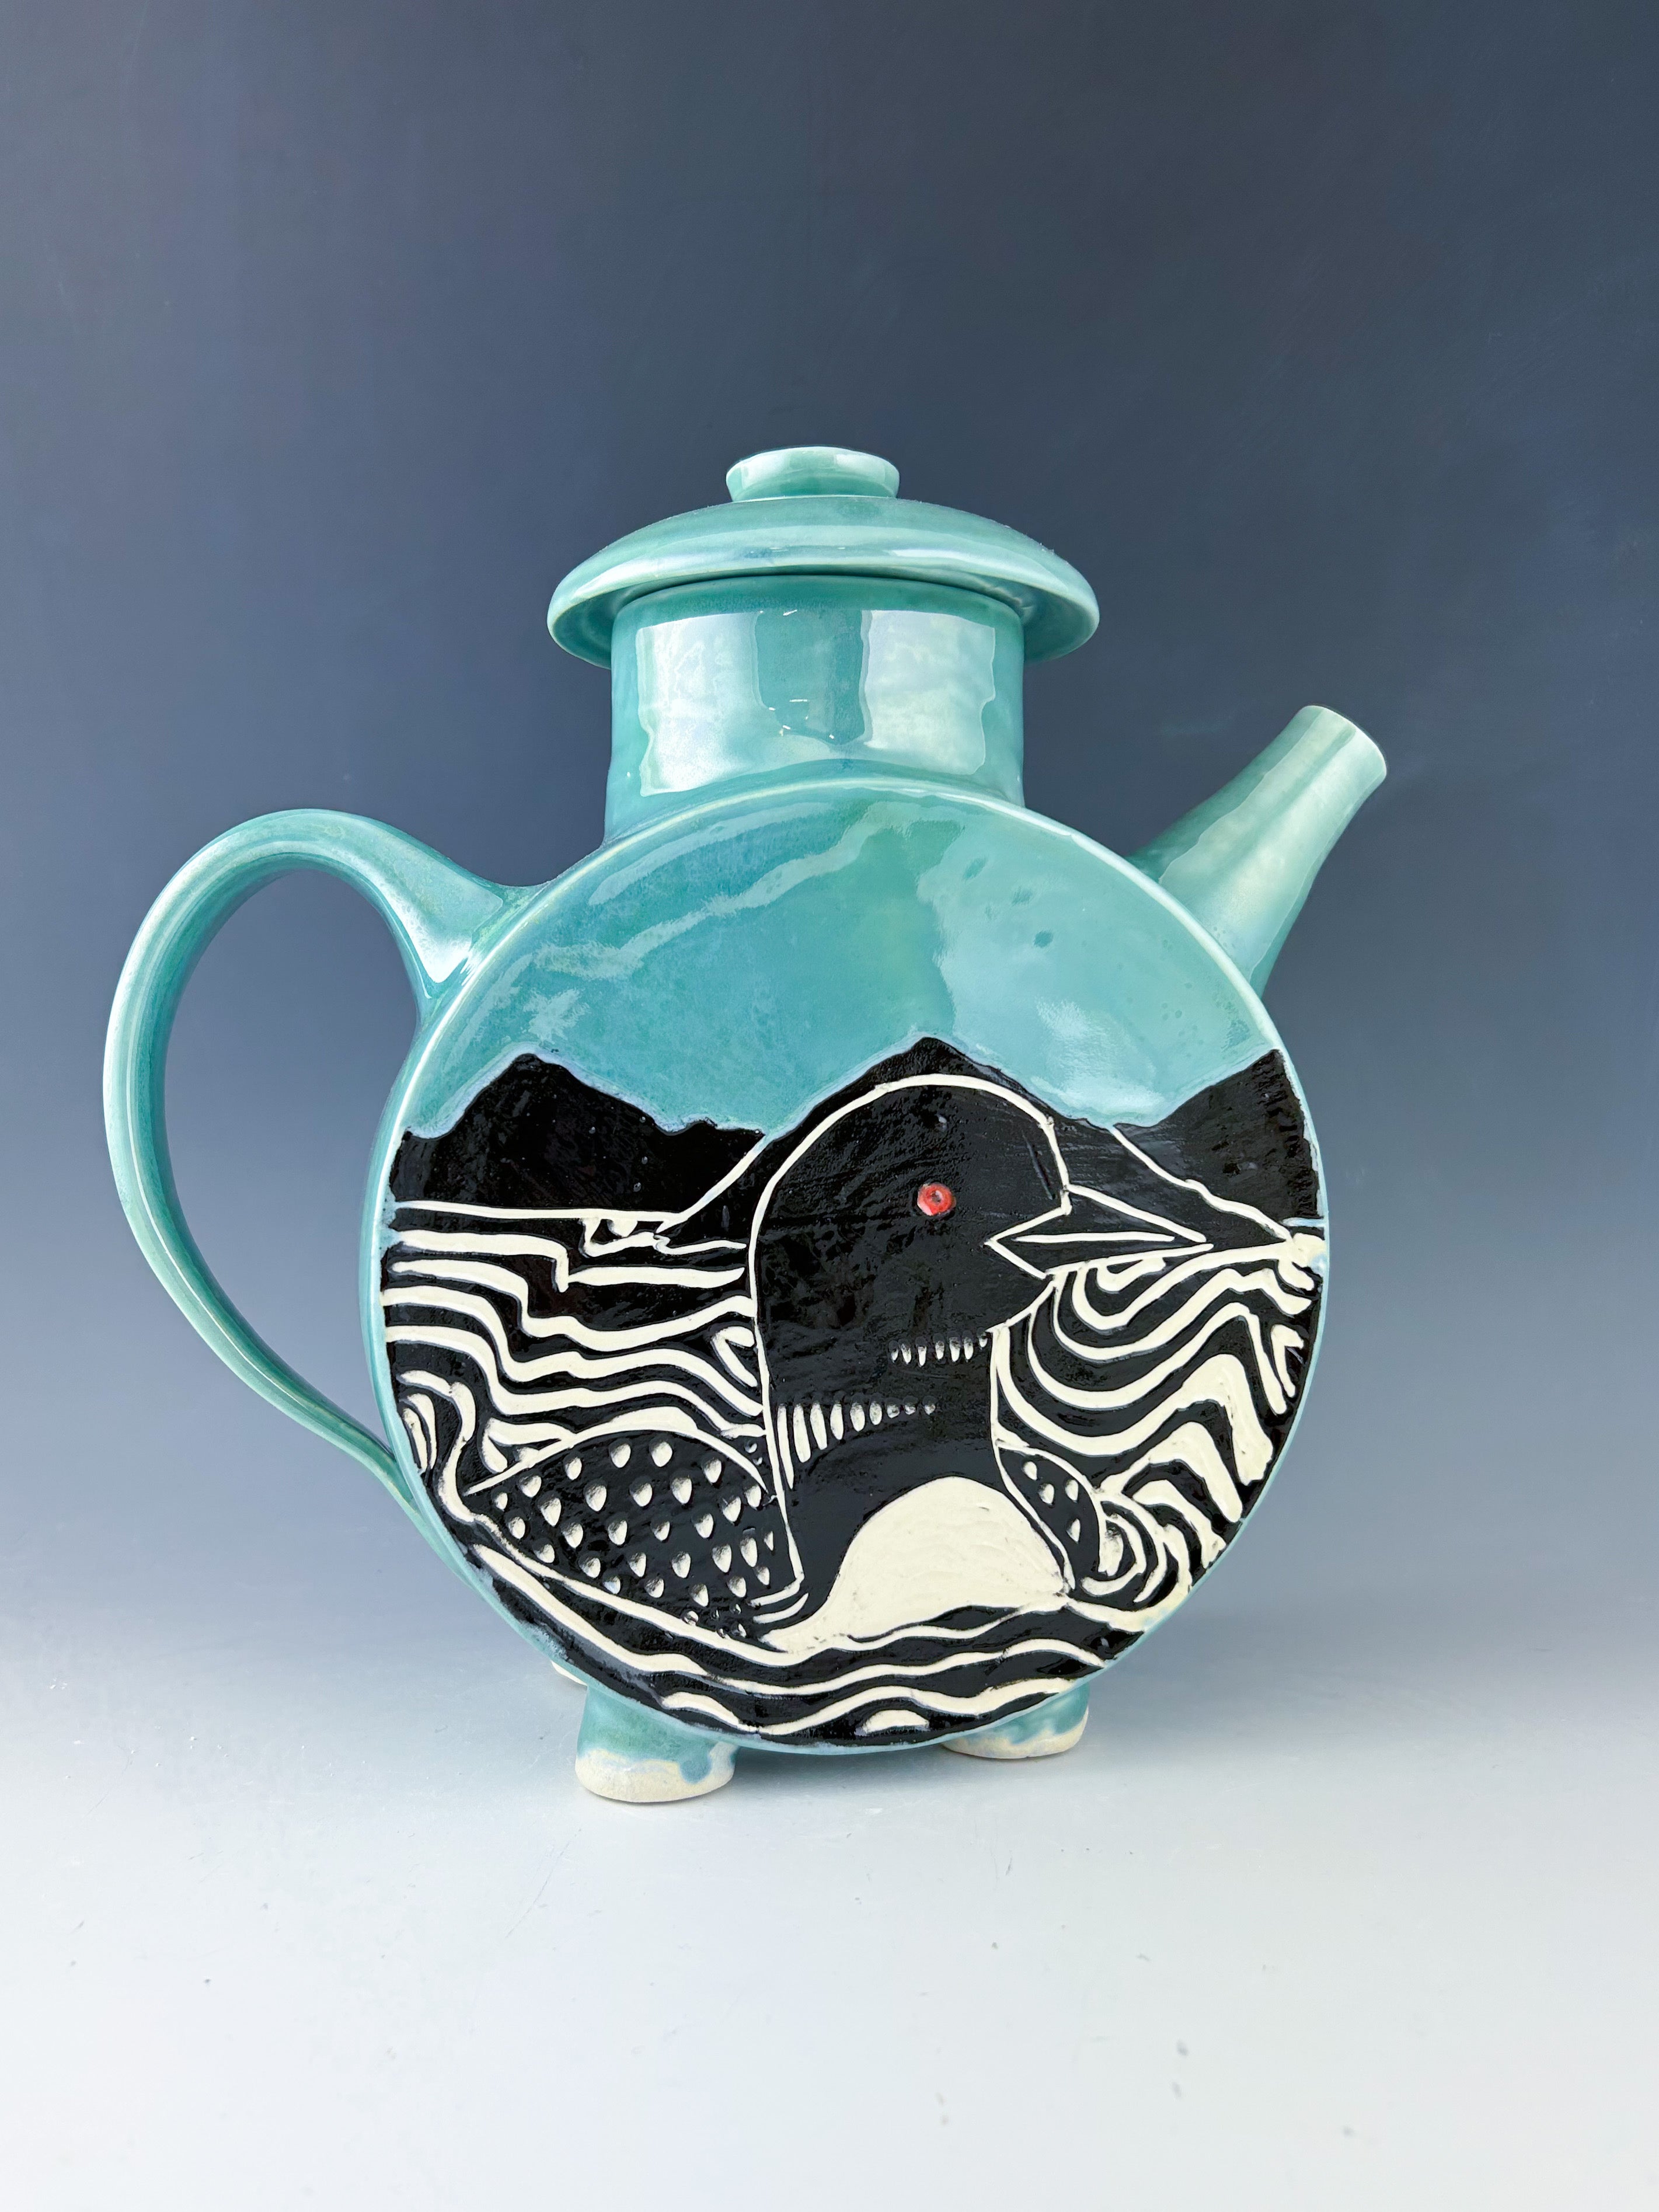 Loon Teapot in Blue